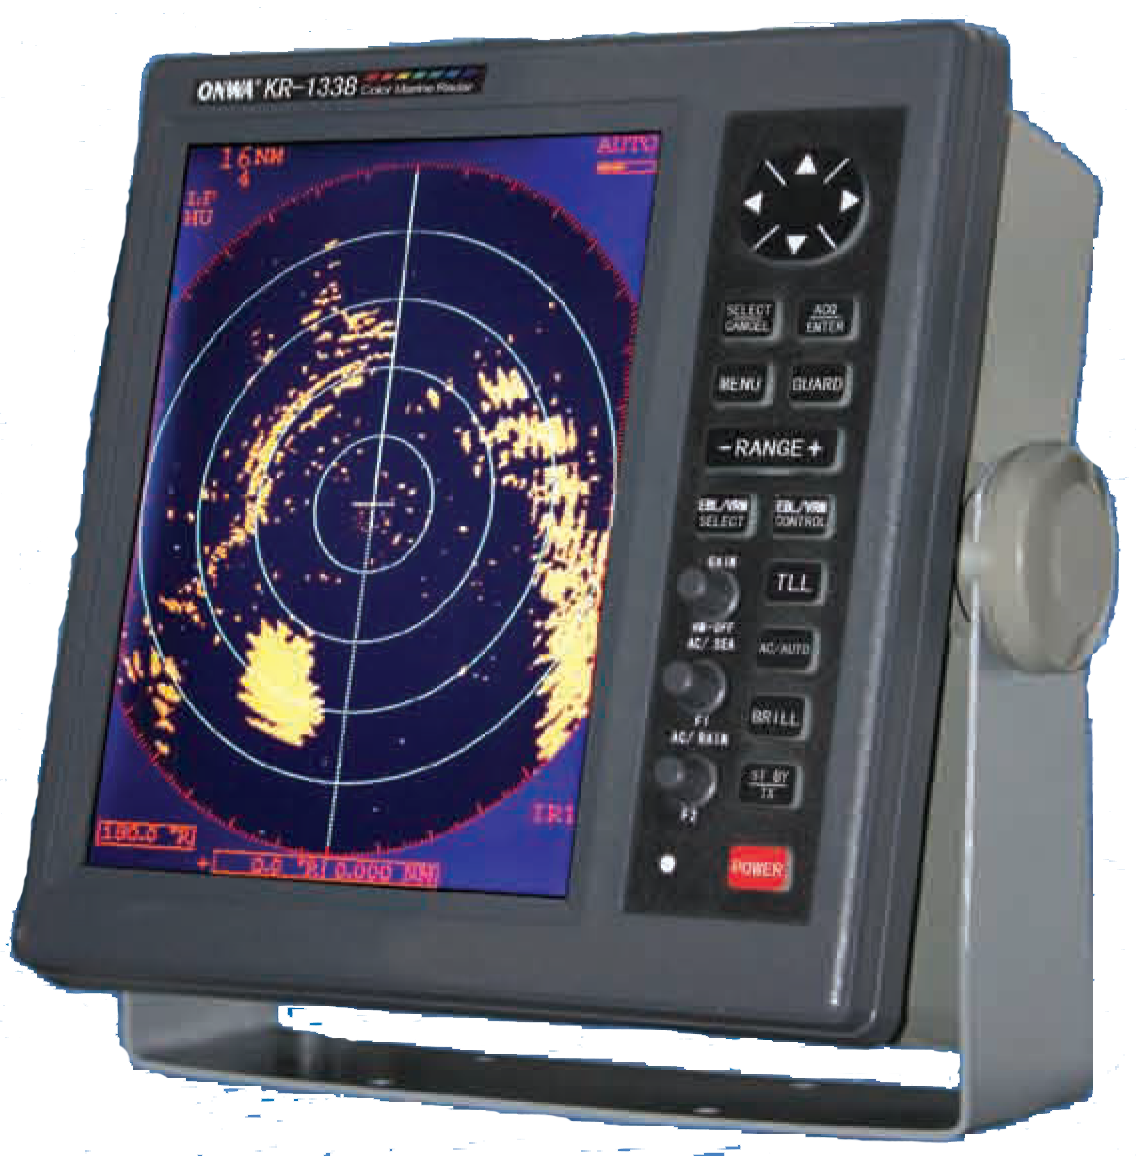 Монитор станции. Судовая навигационная РЛС JMA-5200mk2. Судовые радары Фуруно. Судовой морской радар (Radar). РЛС MTRR-1042.